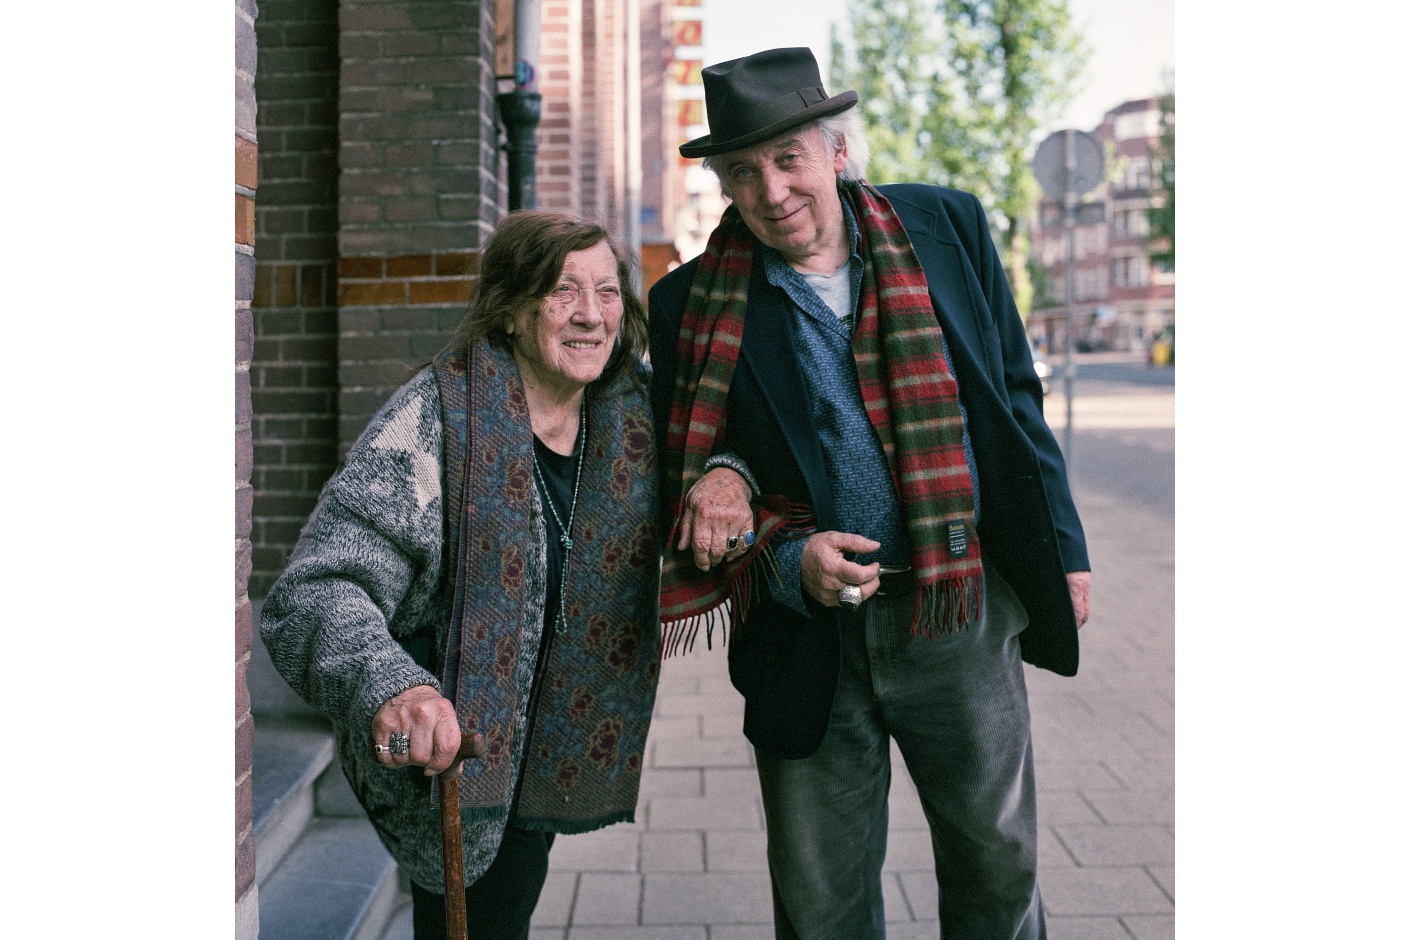 Cor en Thea | Amsterdam | Jelle Pieter de Boer | Hasselblad